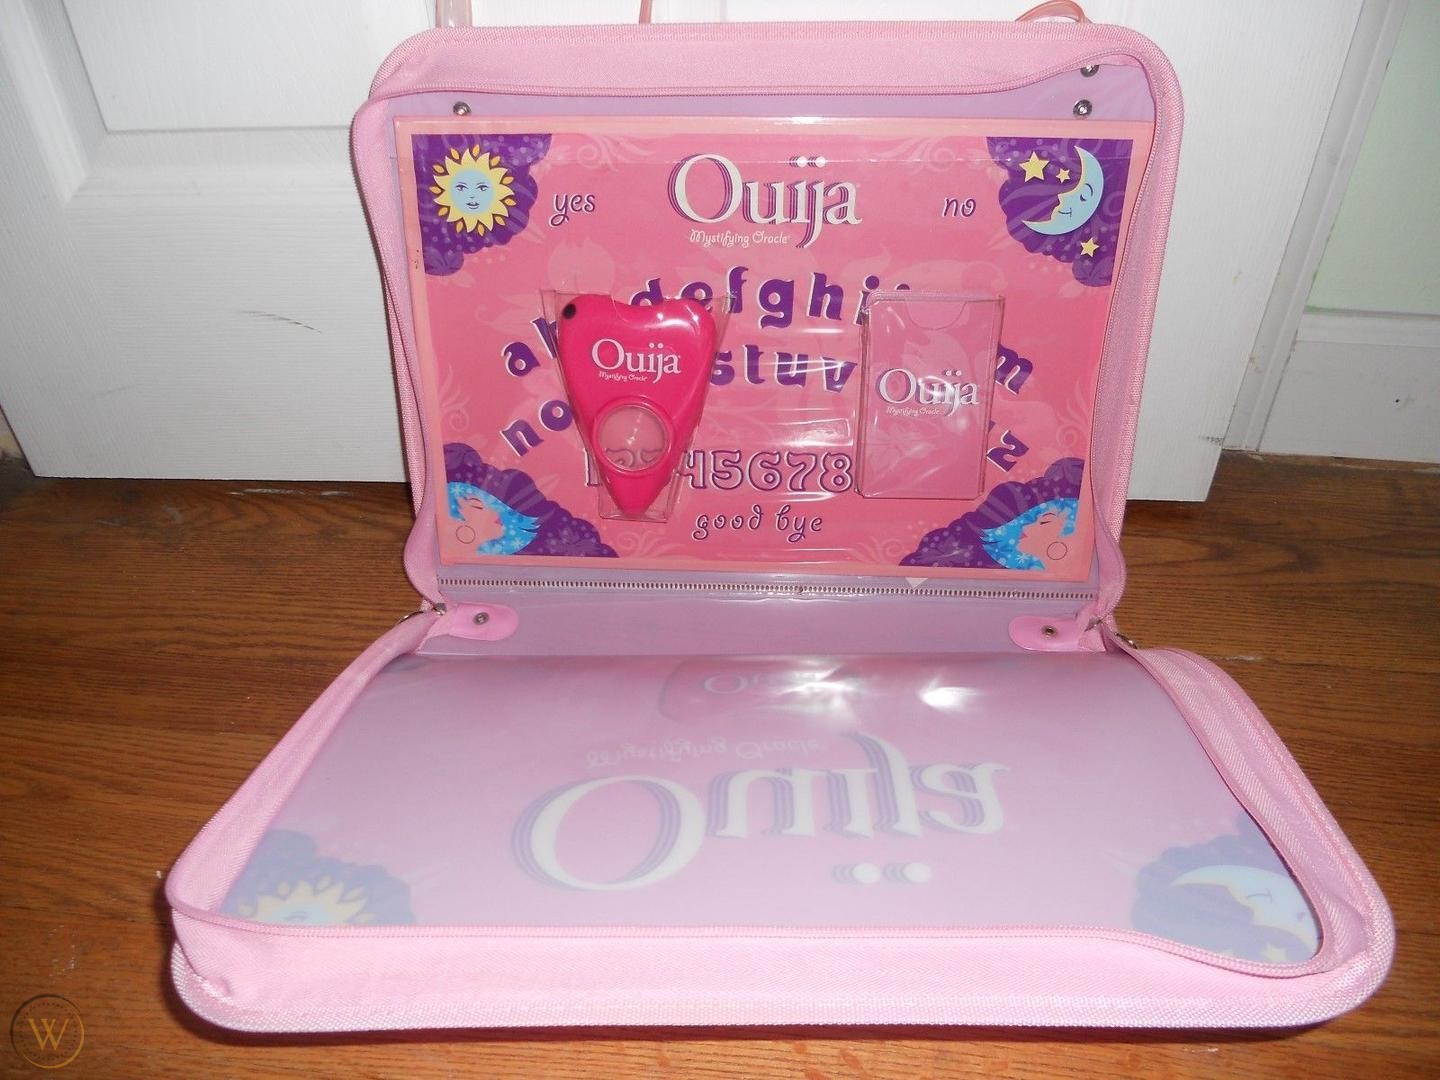 ouija-board-pink-hasbro-mystifying_1_8abf338cd9333604c70f931e512ac8cd